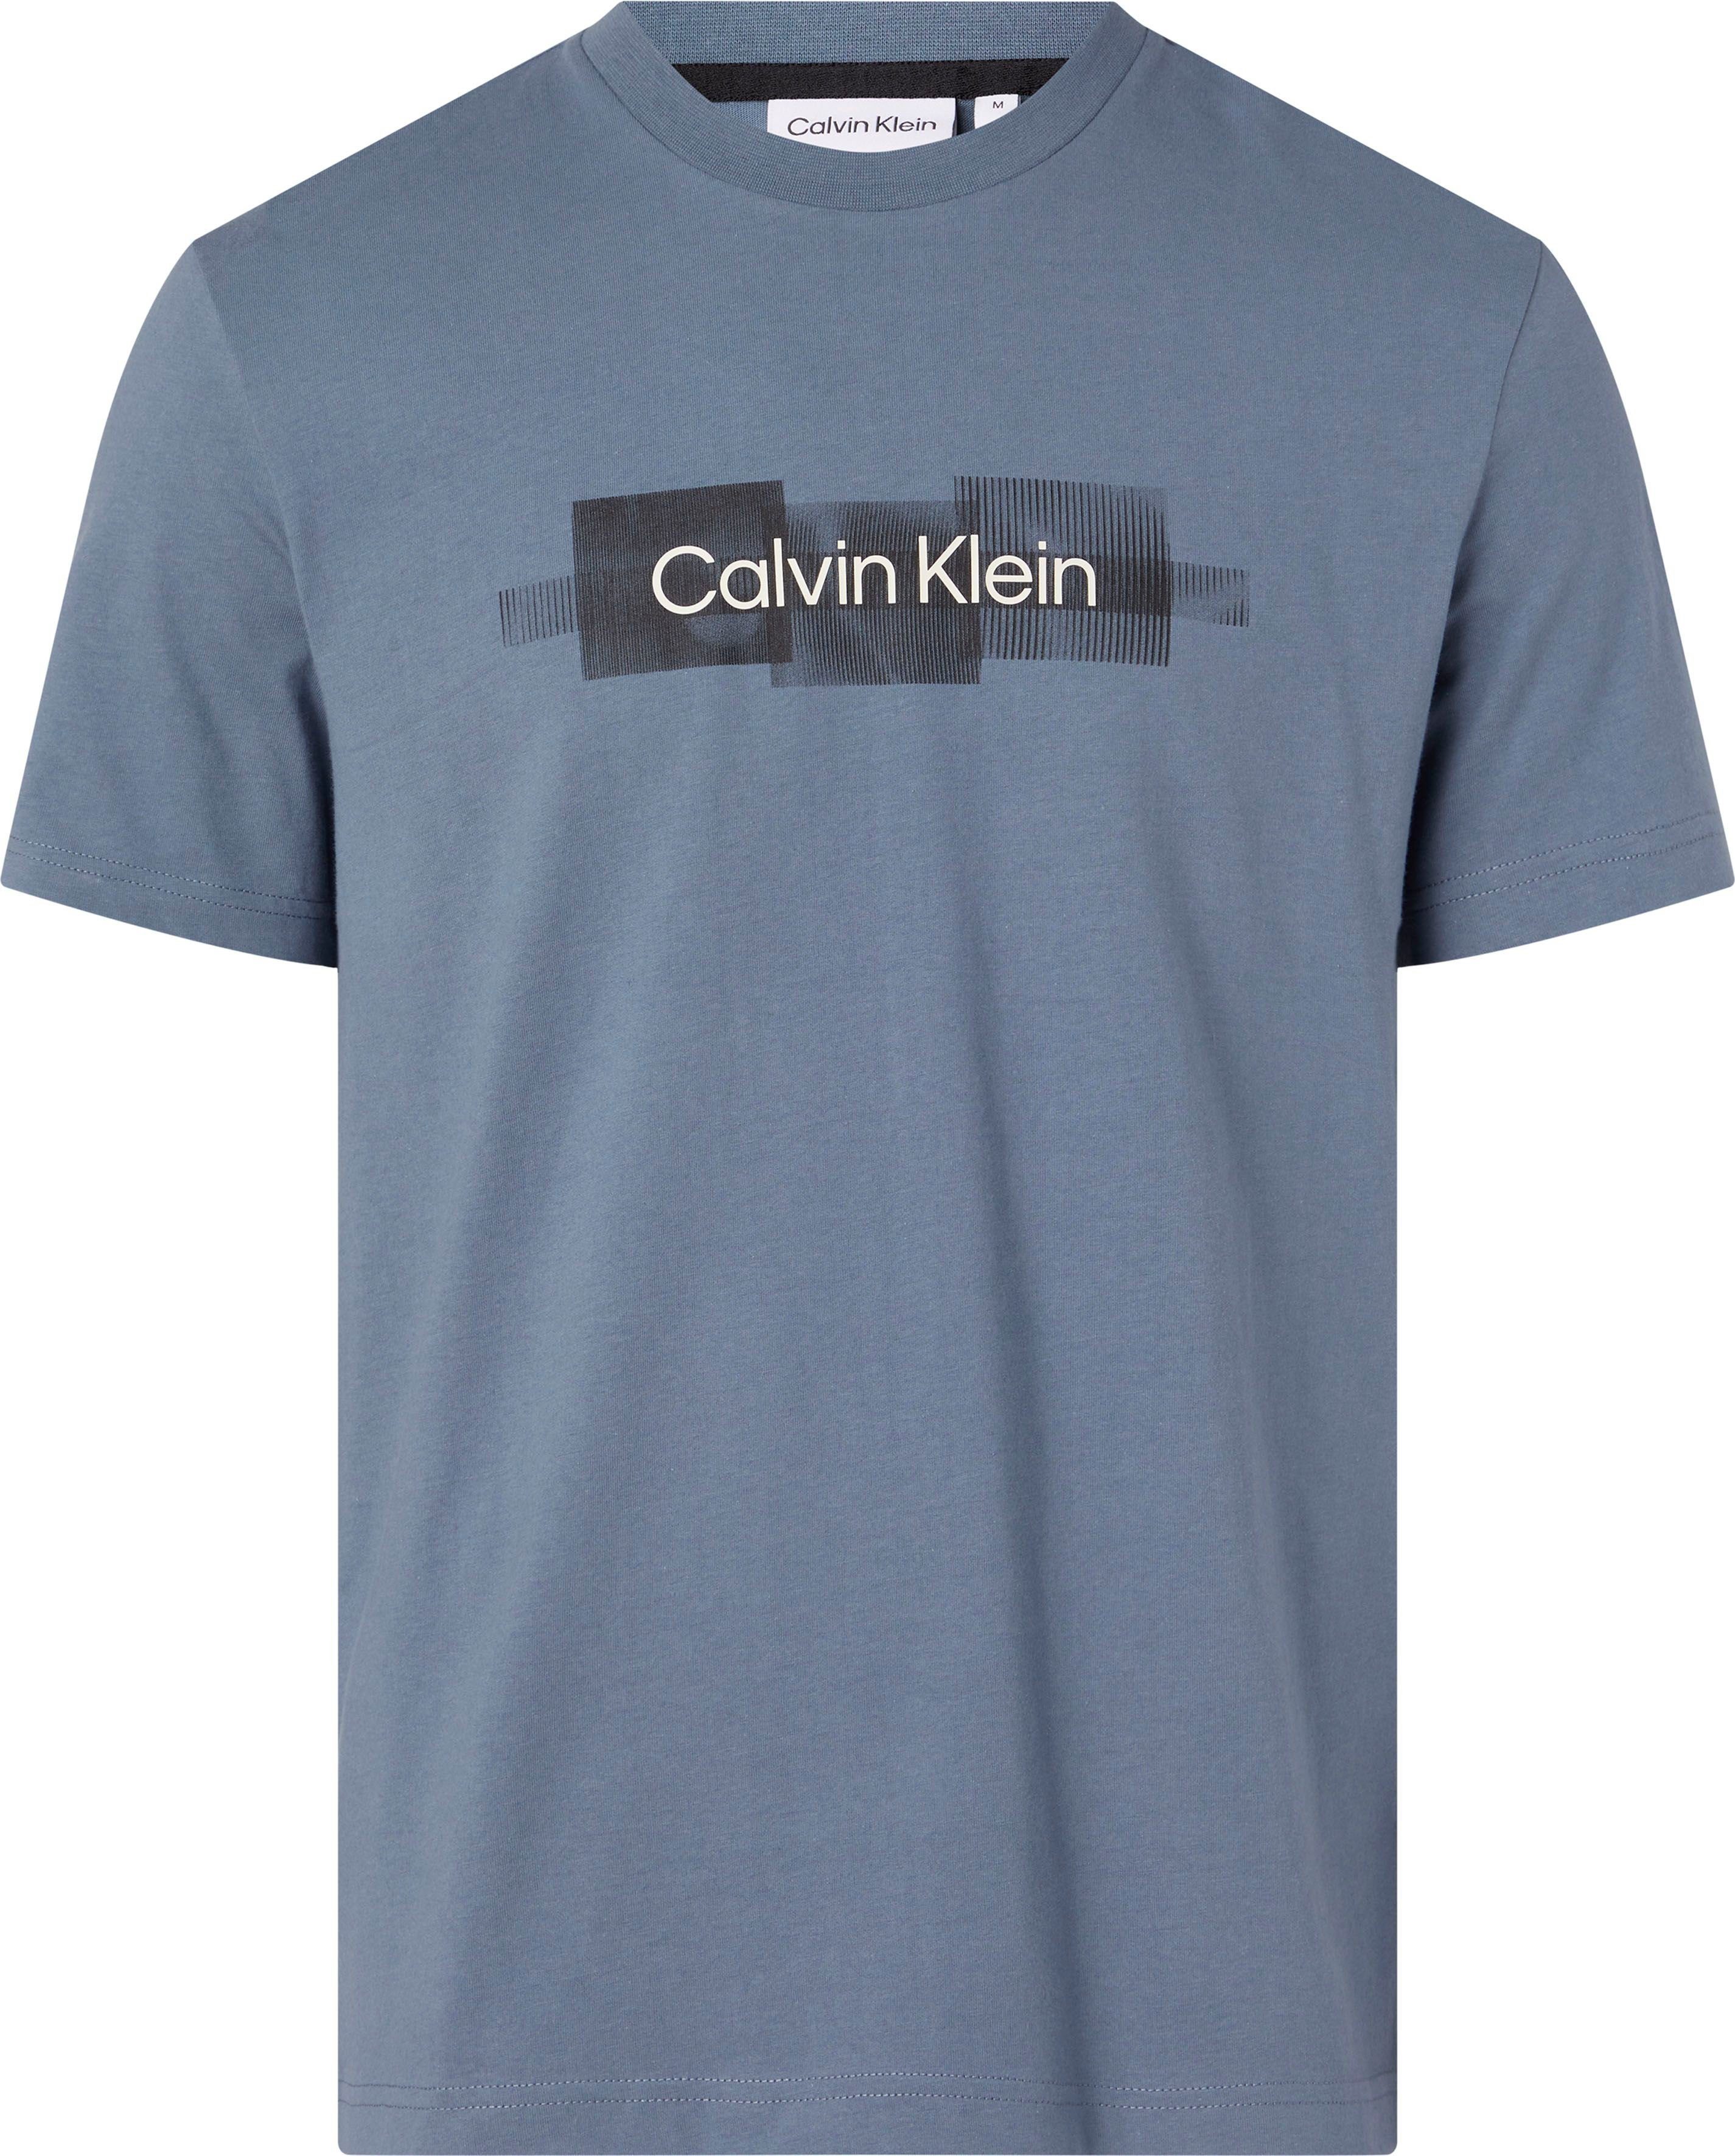 Tar T-SHIRT BOX Klein Baumwolle Grey Calvin T-Shirt LOGO STRIPED reiner aus